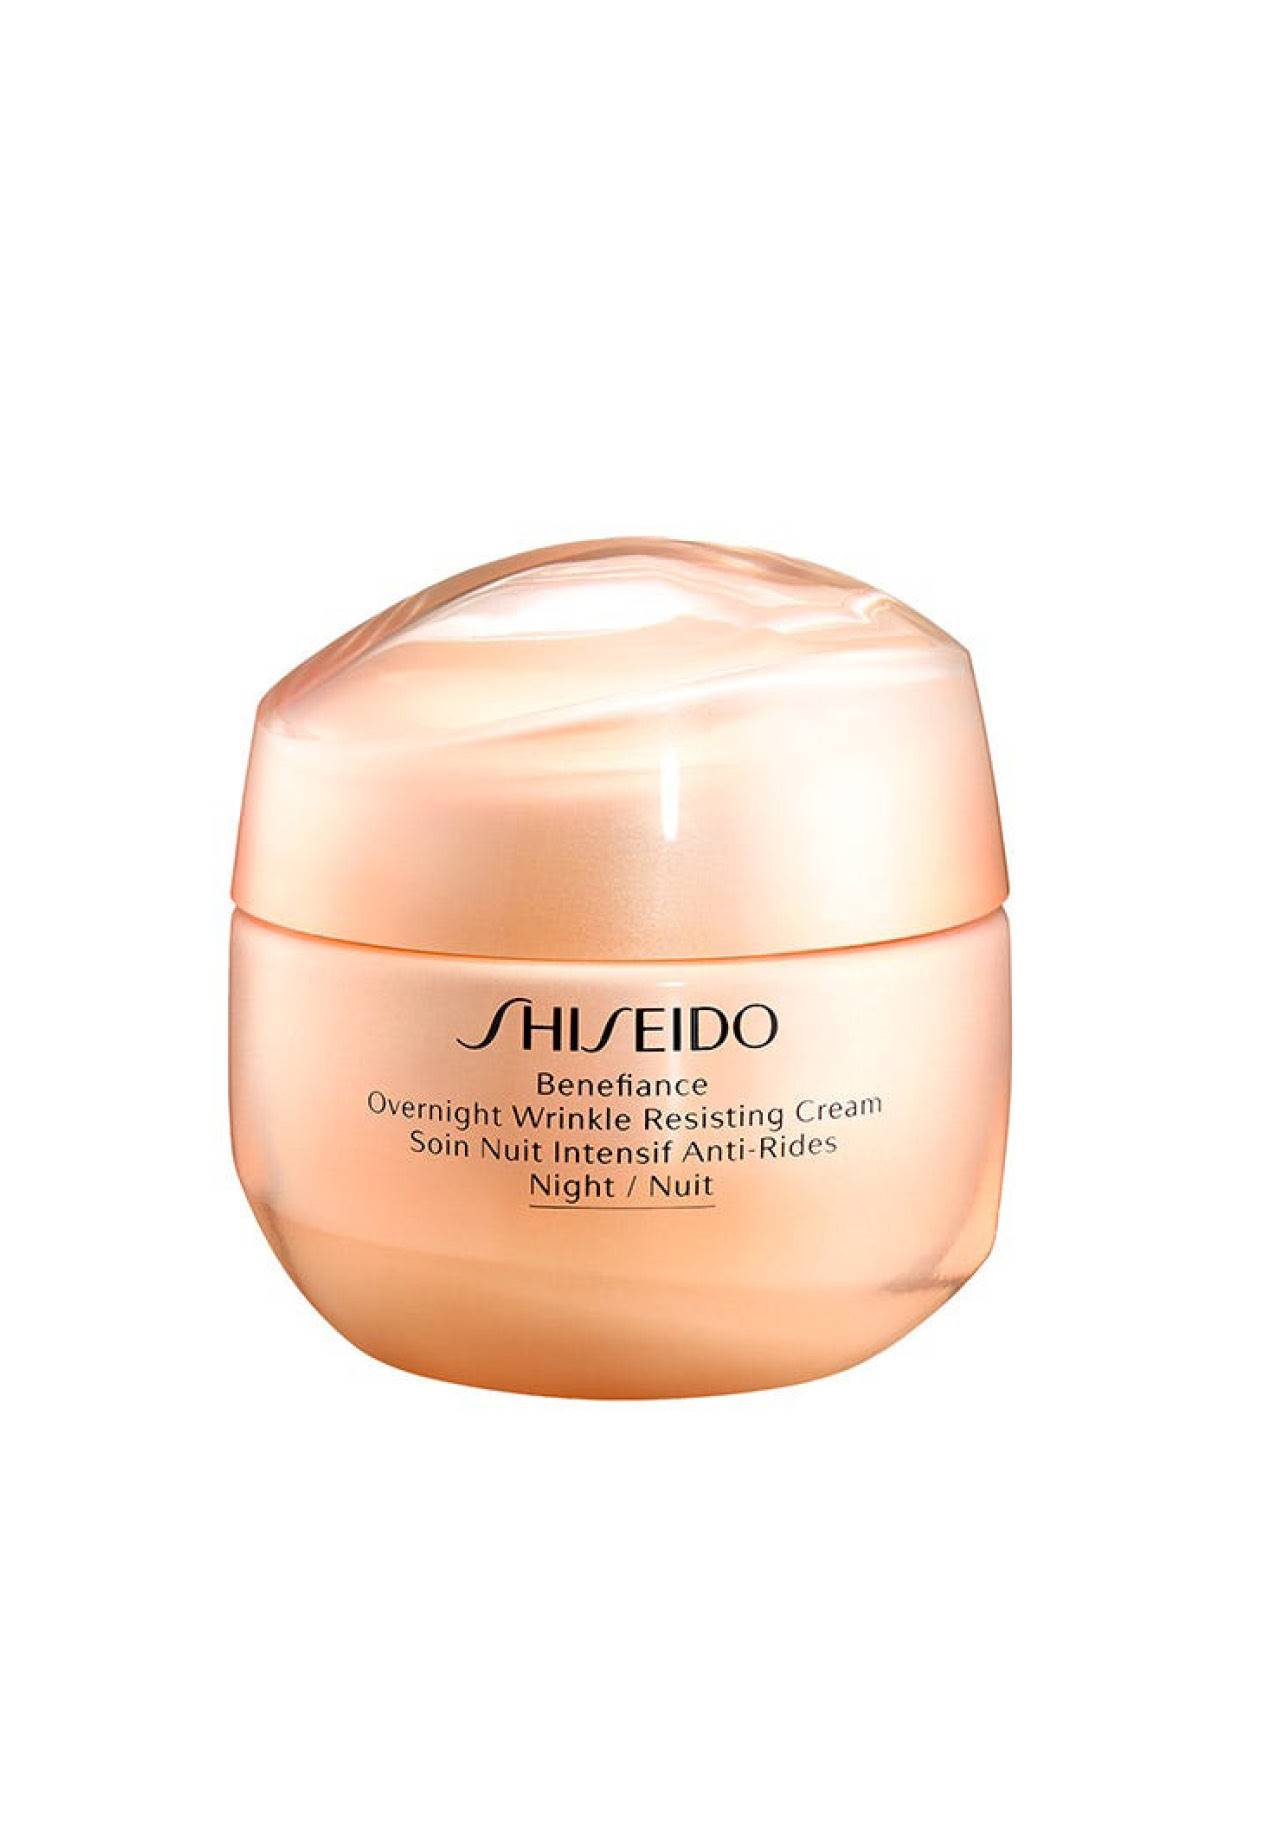 Cosmética rutina diaria pieles secas más de 40 años Benefiance Overnight Wrinkle Resisting Cream de Shiseido